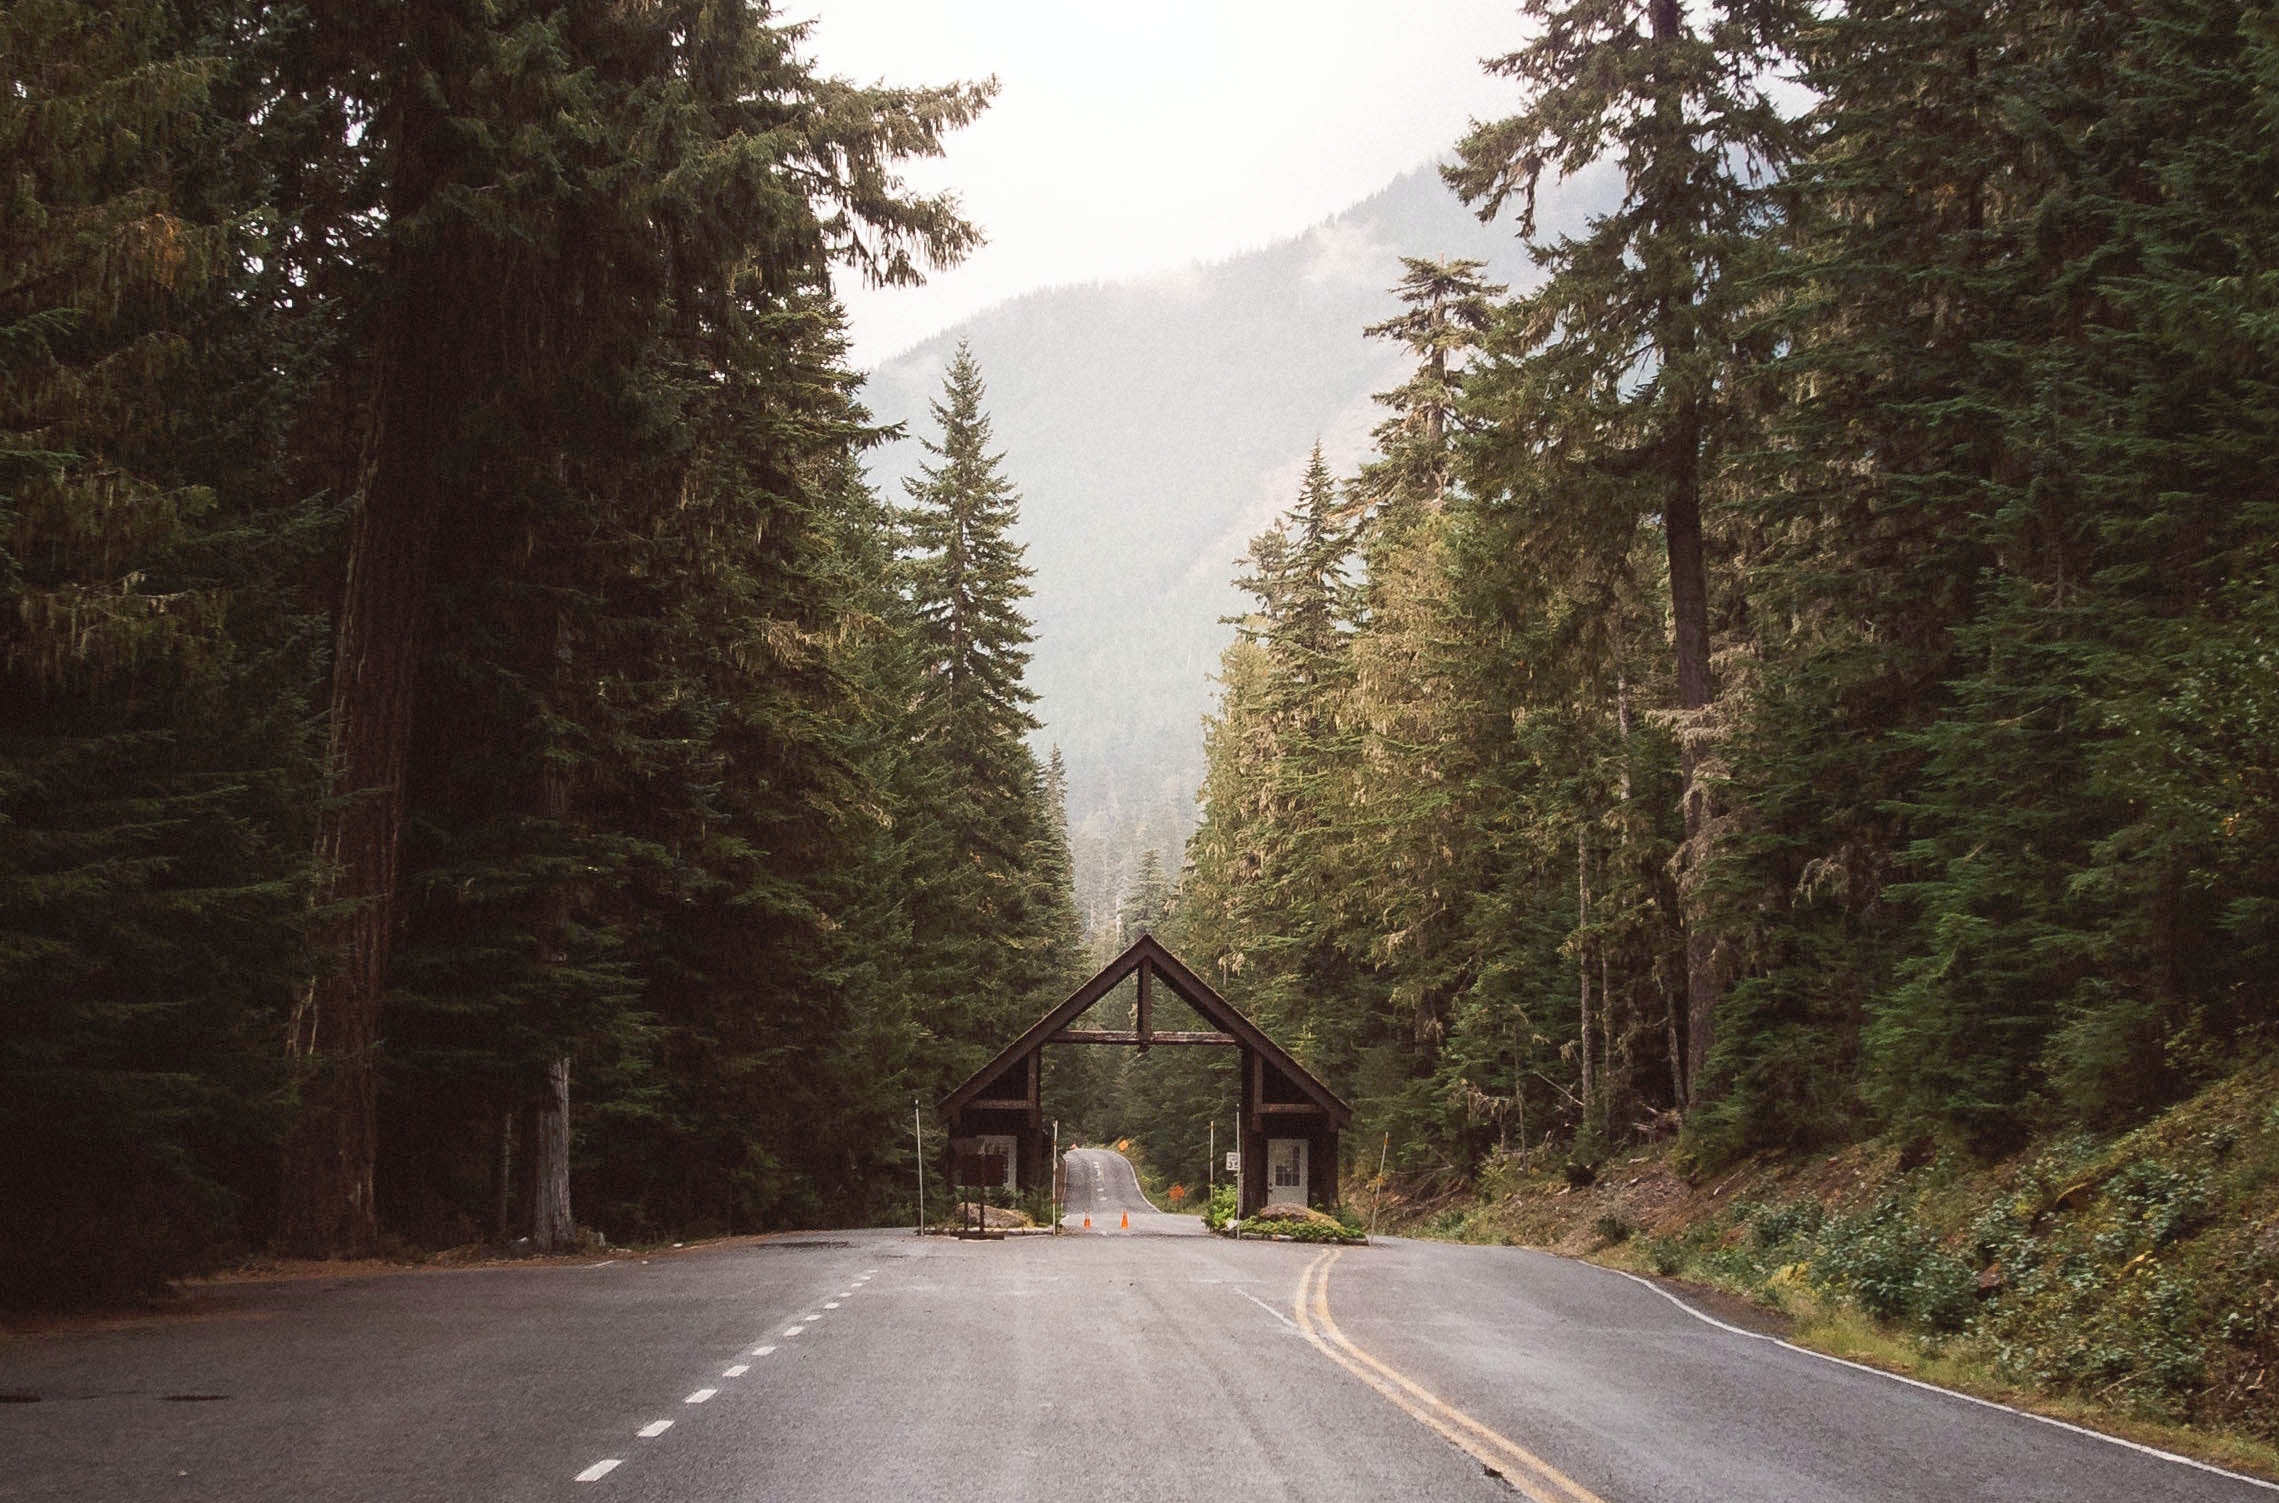 Entrance to Mt. Rainier National Park